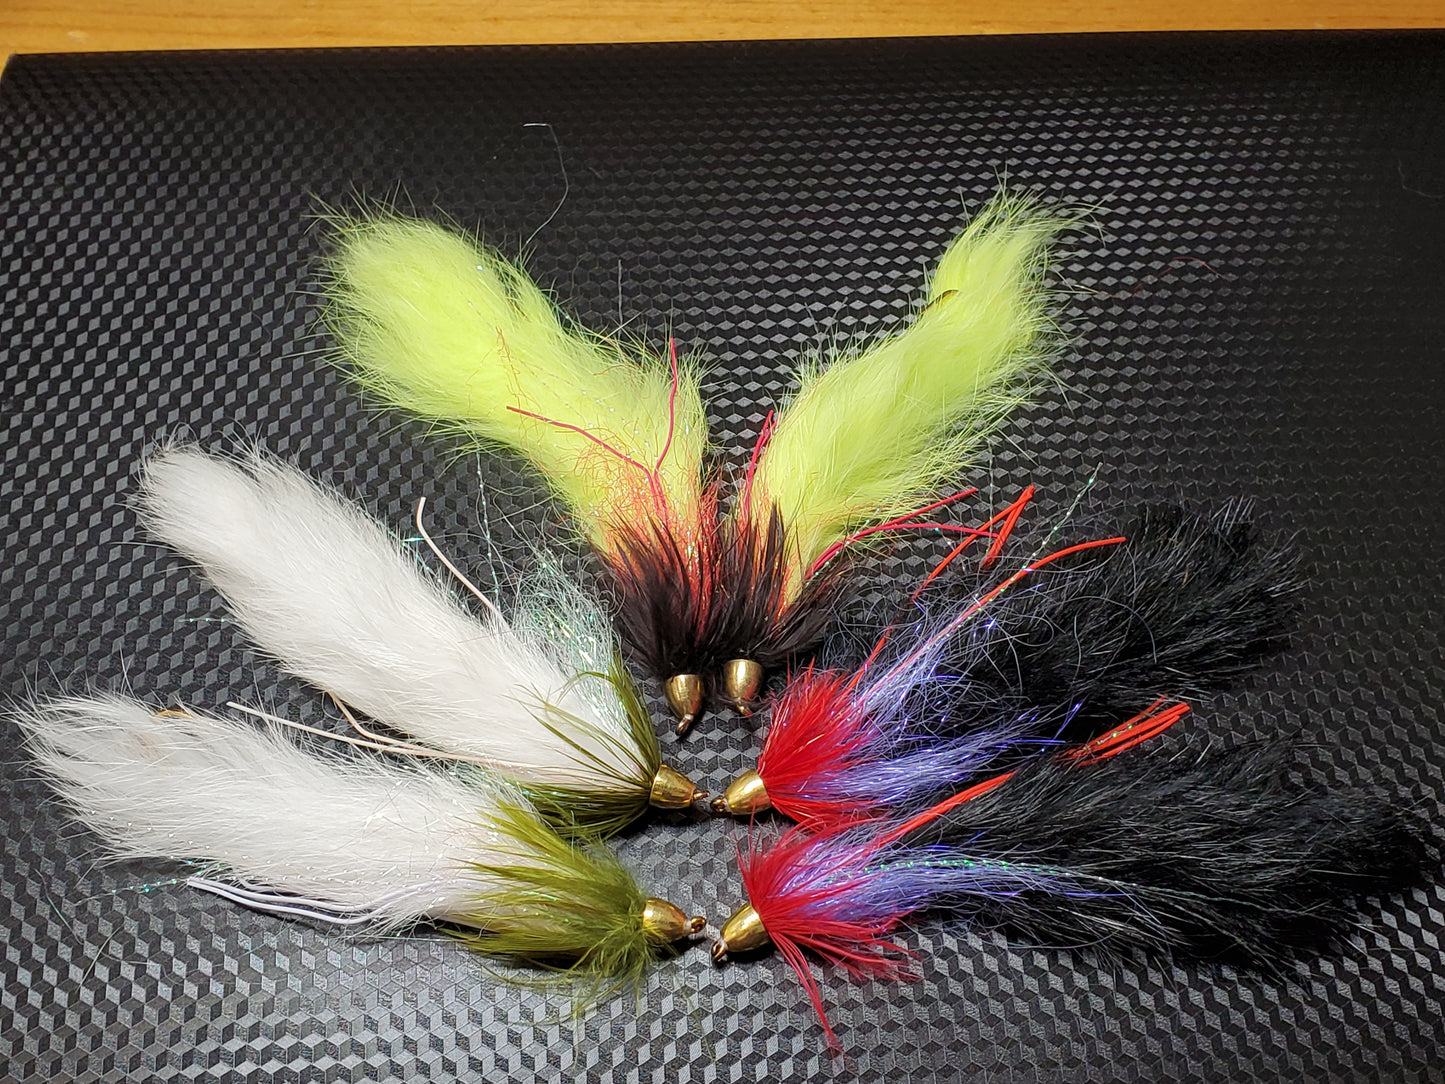 Conehead Leech, Conehead Rabbit Leech, Conehead Streamer Fly, String Leech